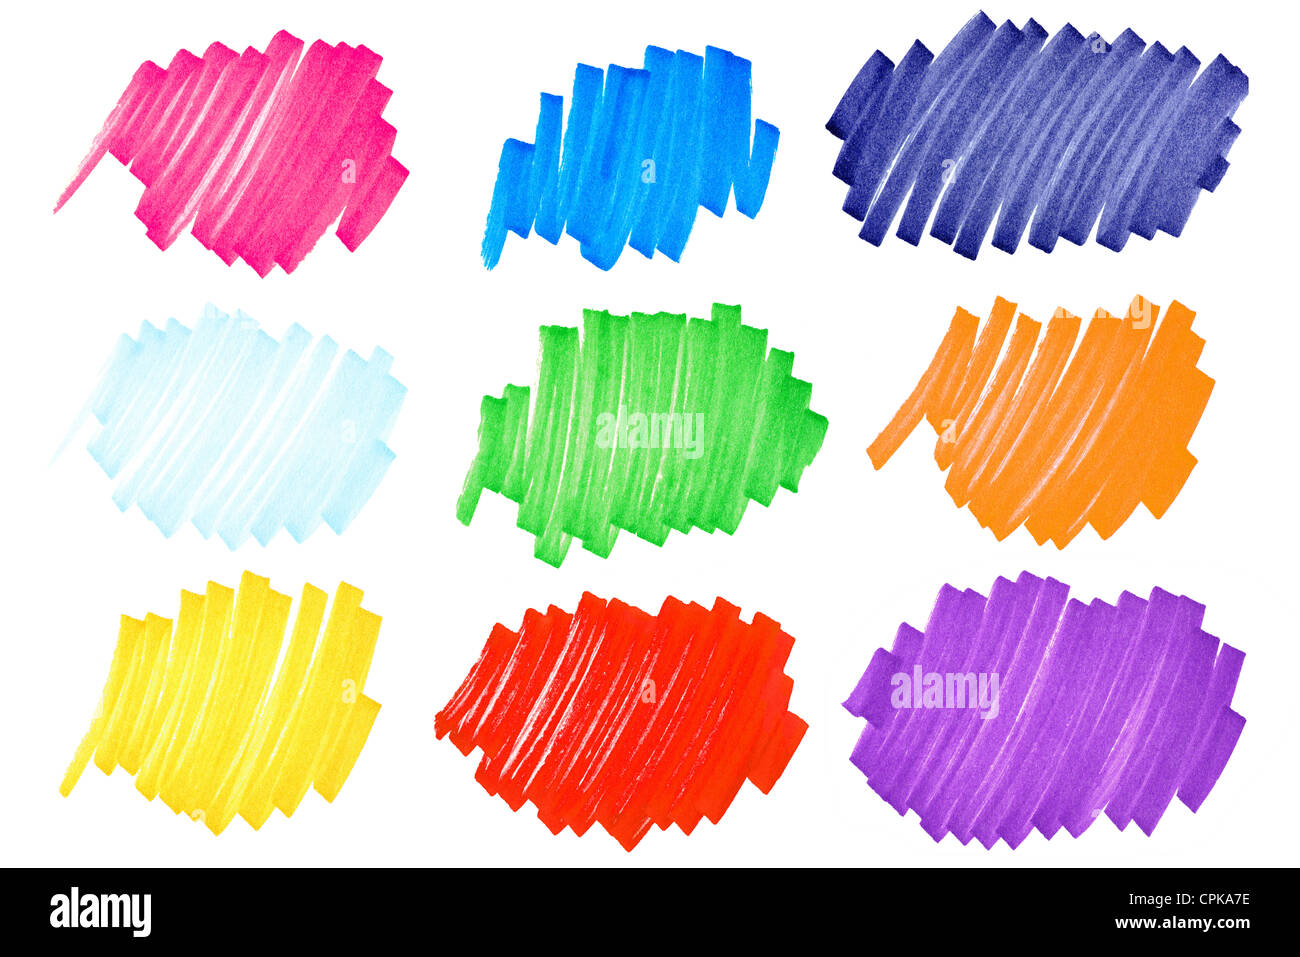 Pennarello macchie di inchiostro in splendidi colori molto grandi macro shot con molti dettagli, comprese le fibre di carta Foto Stock